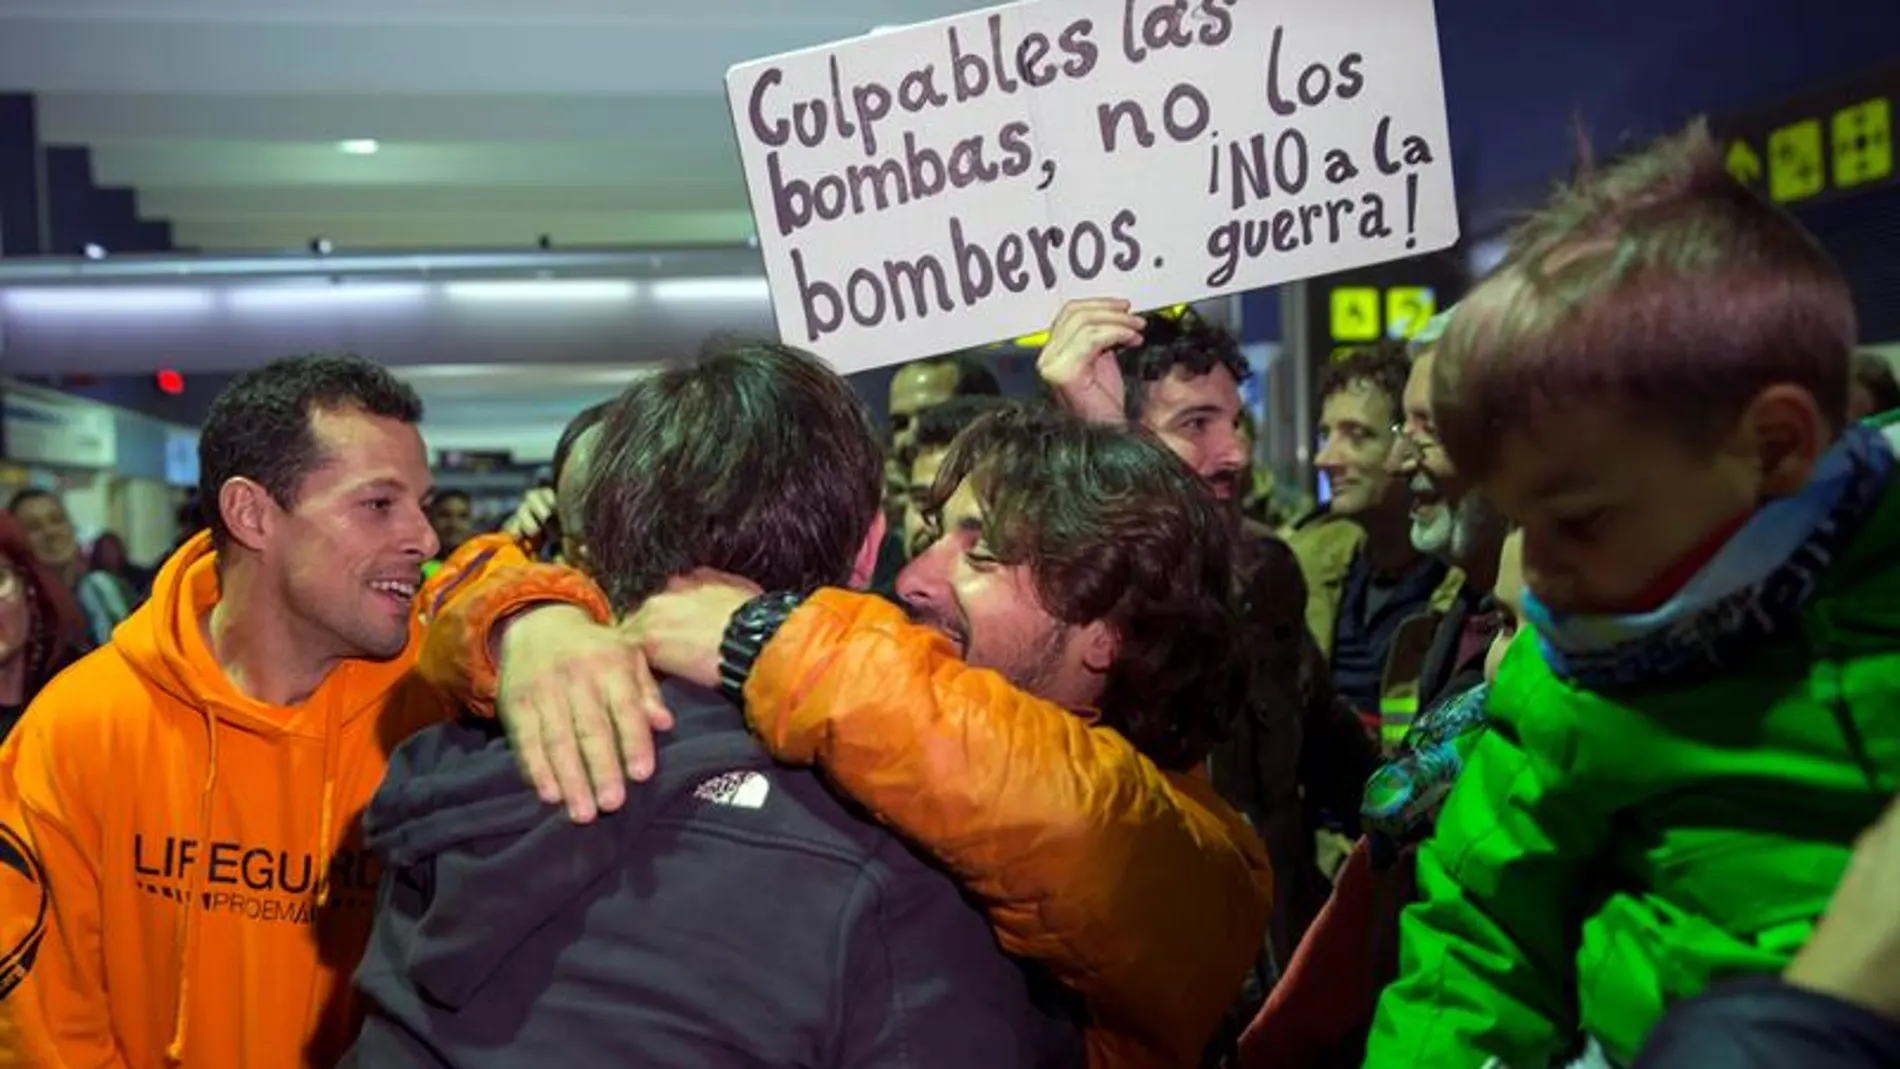 Los bomberos detenidos en Lesbos llegan a España